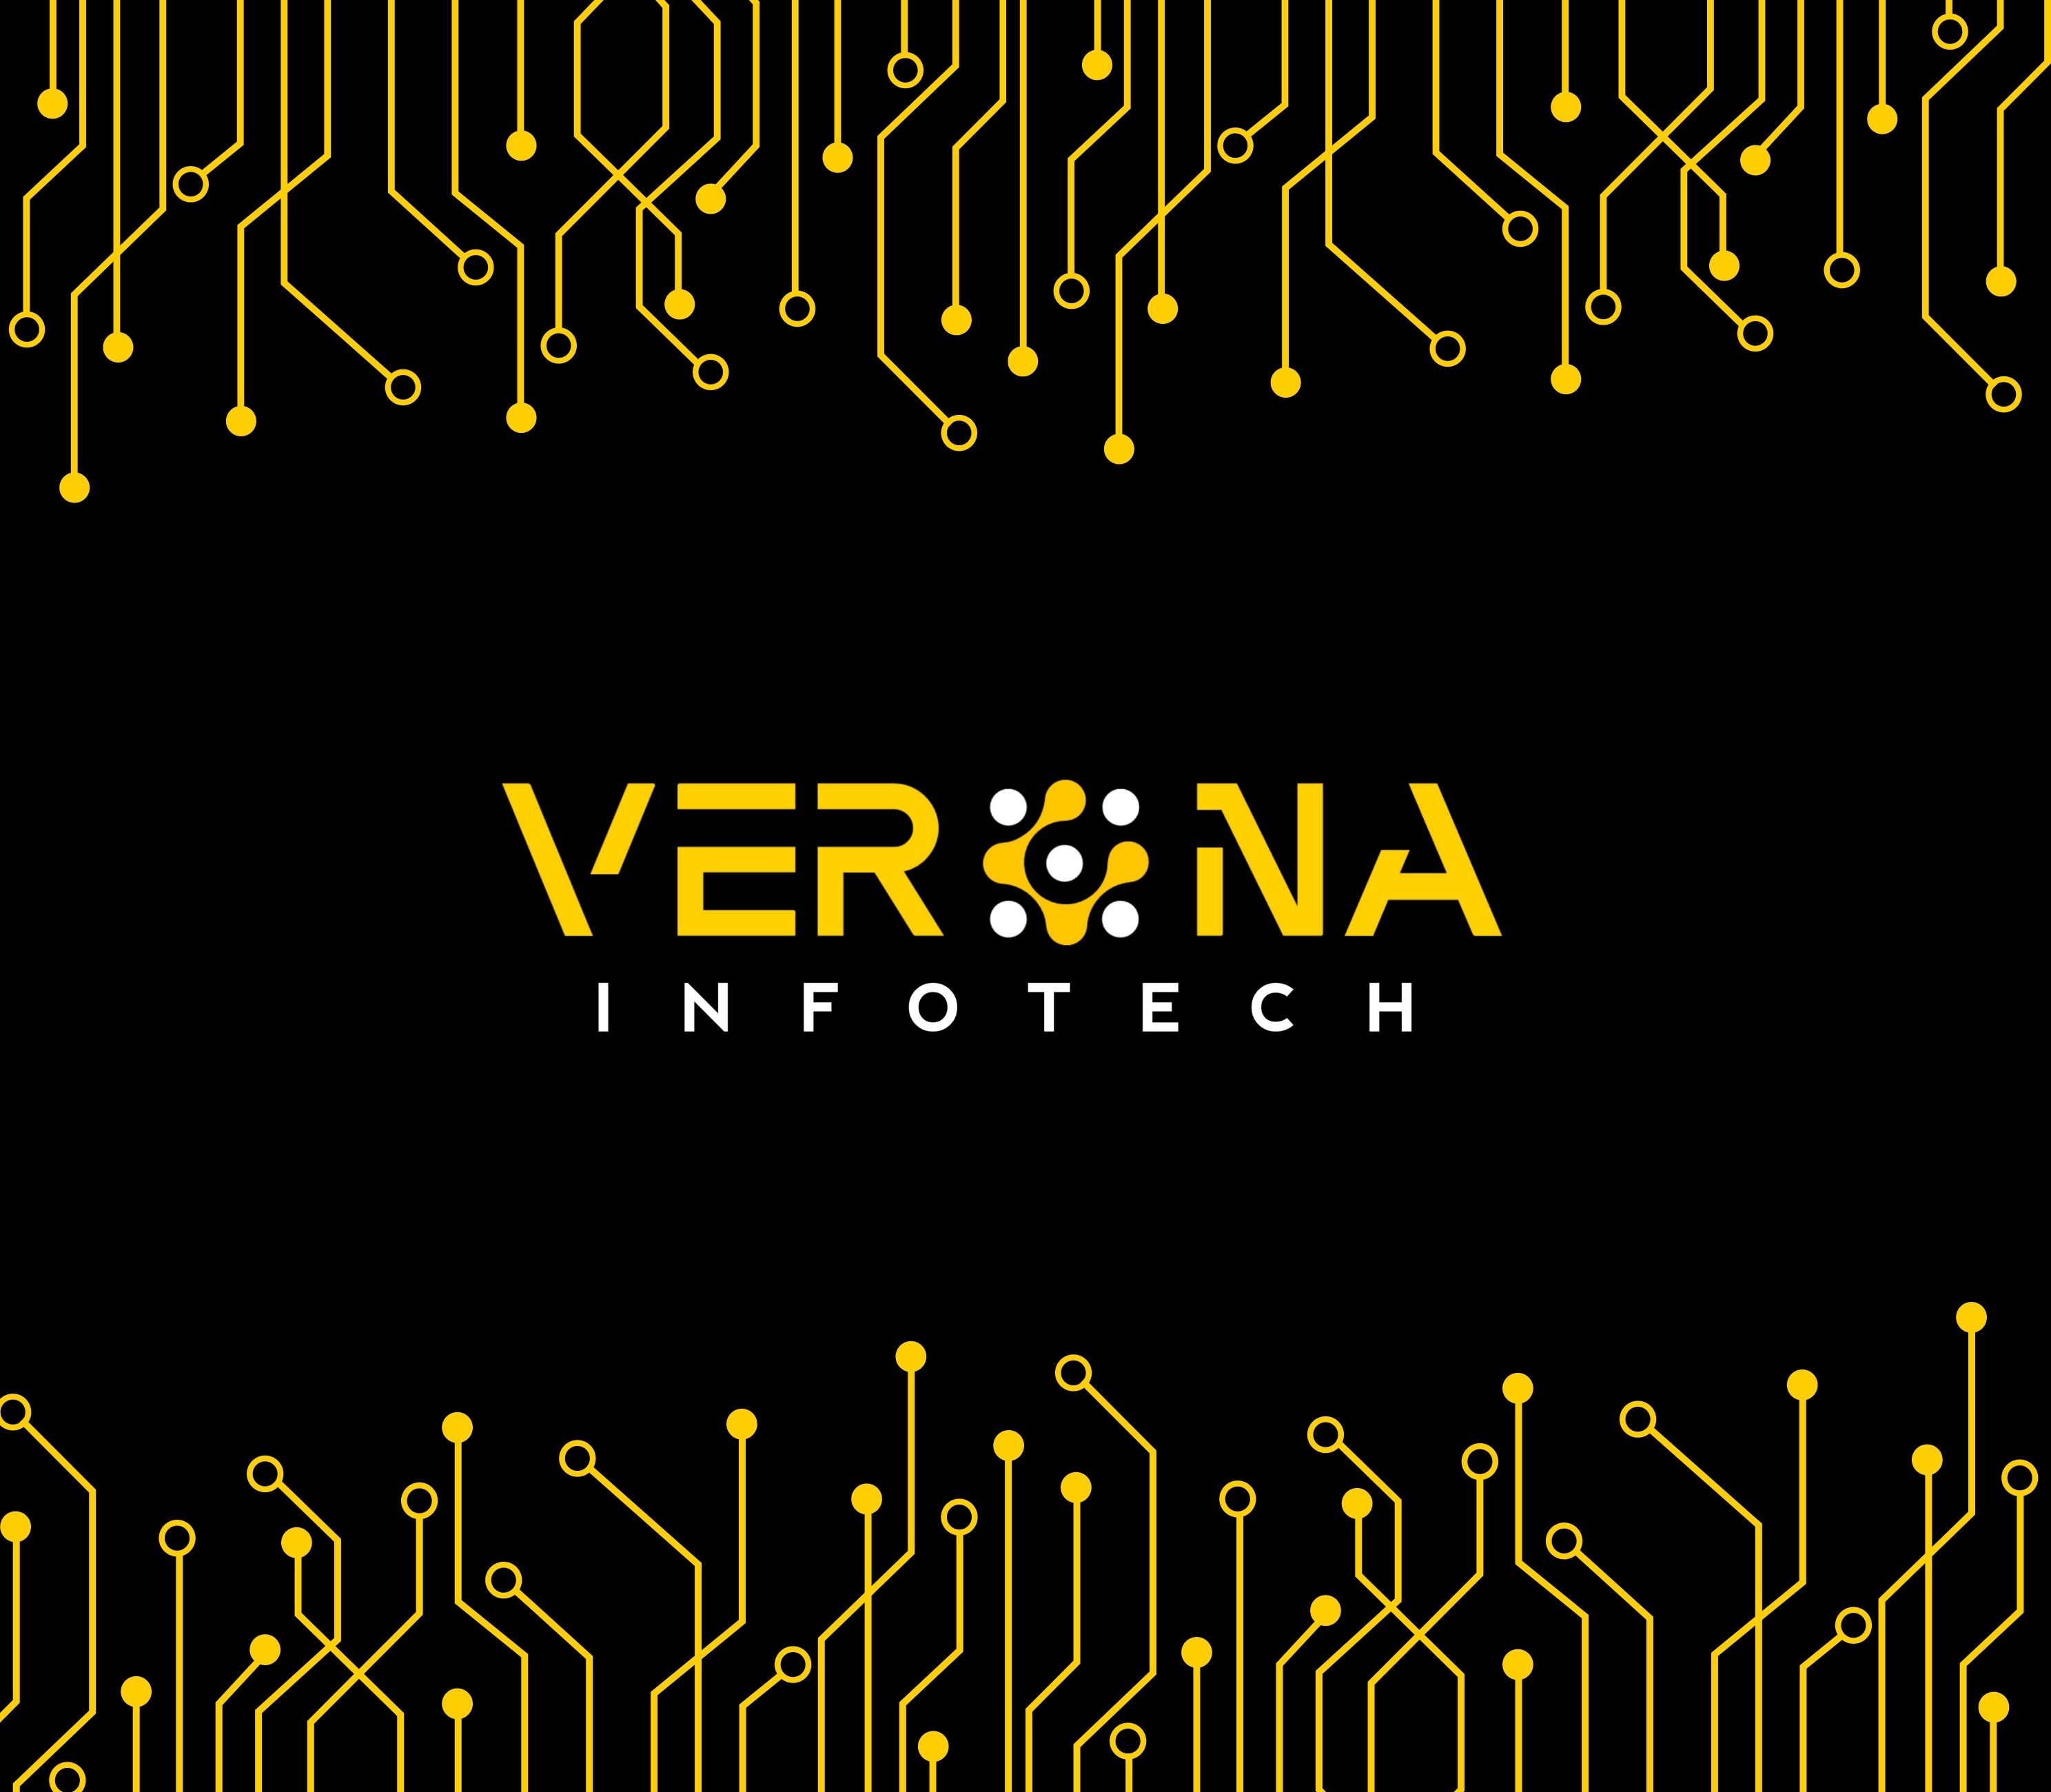 Verona Infotech 